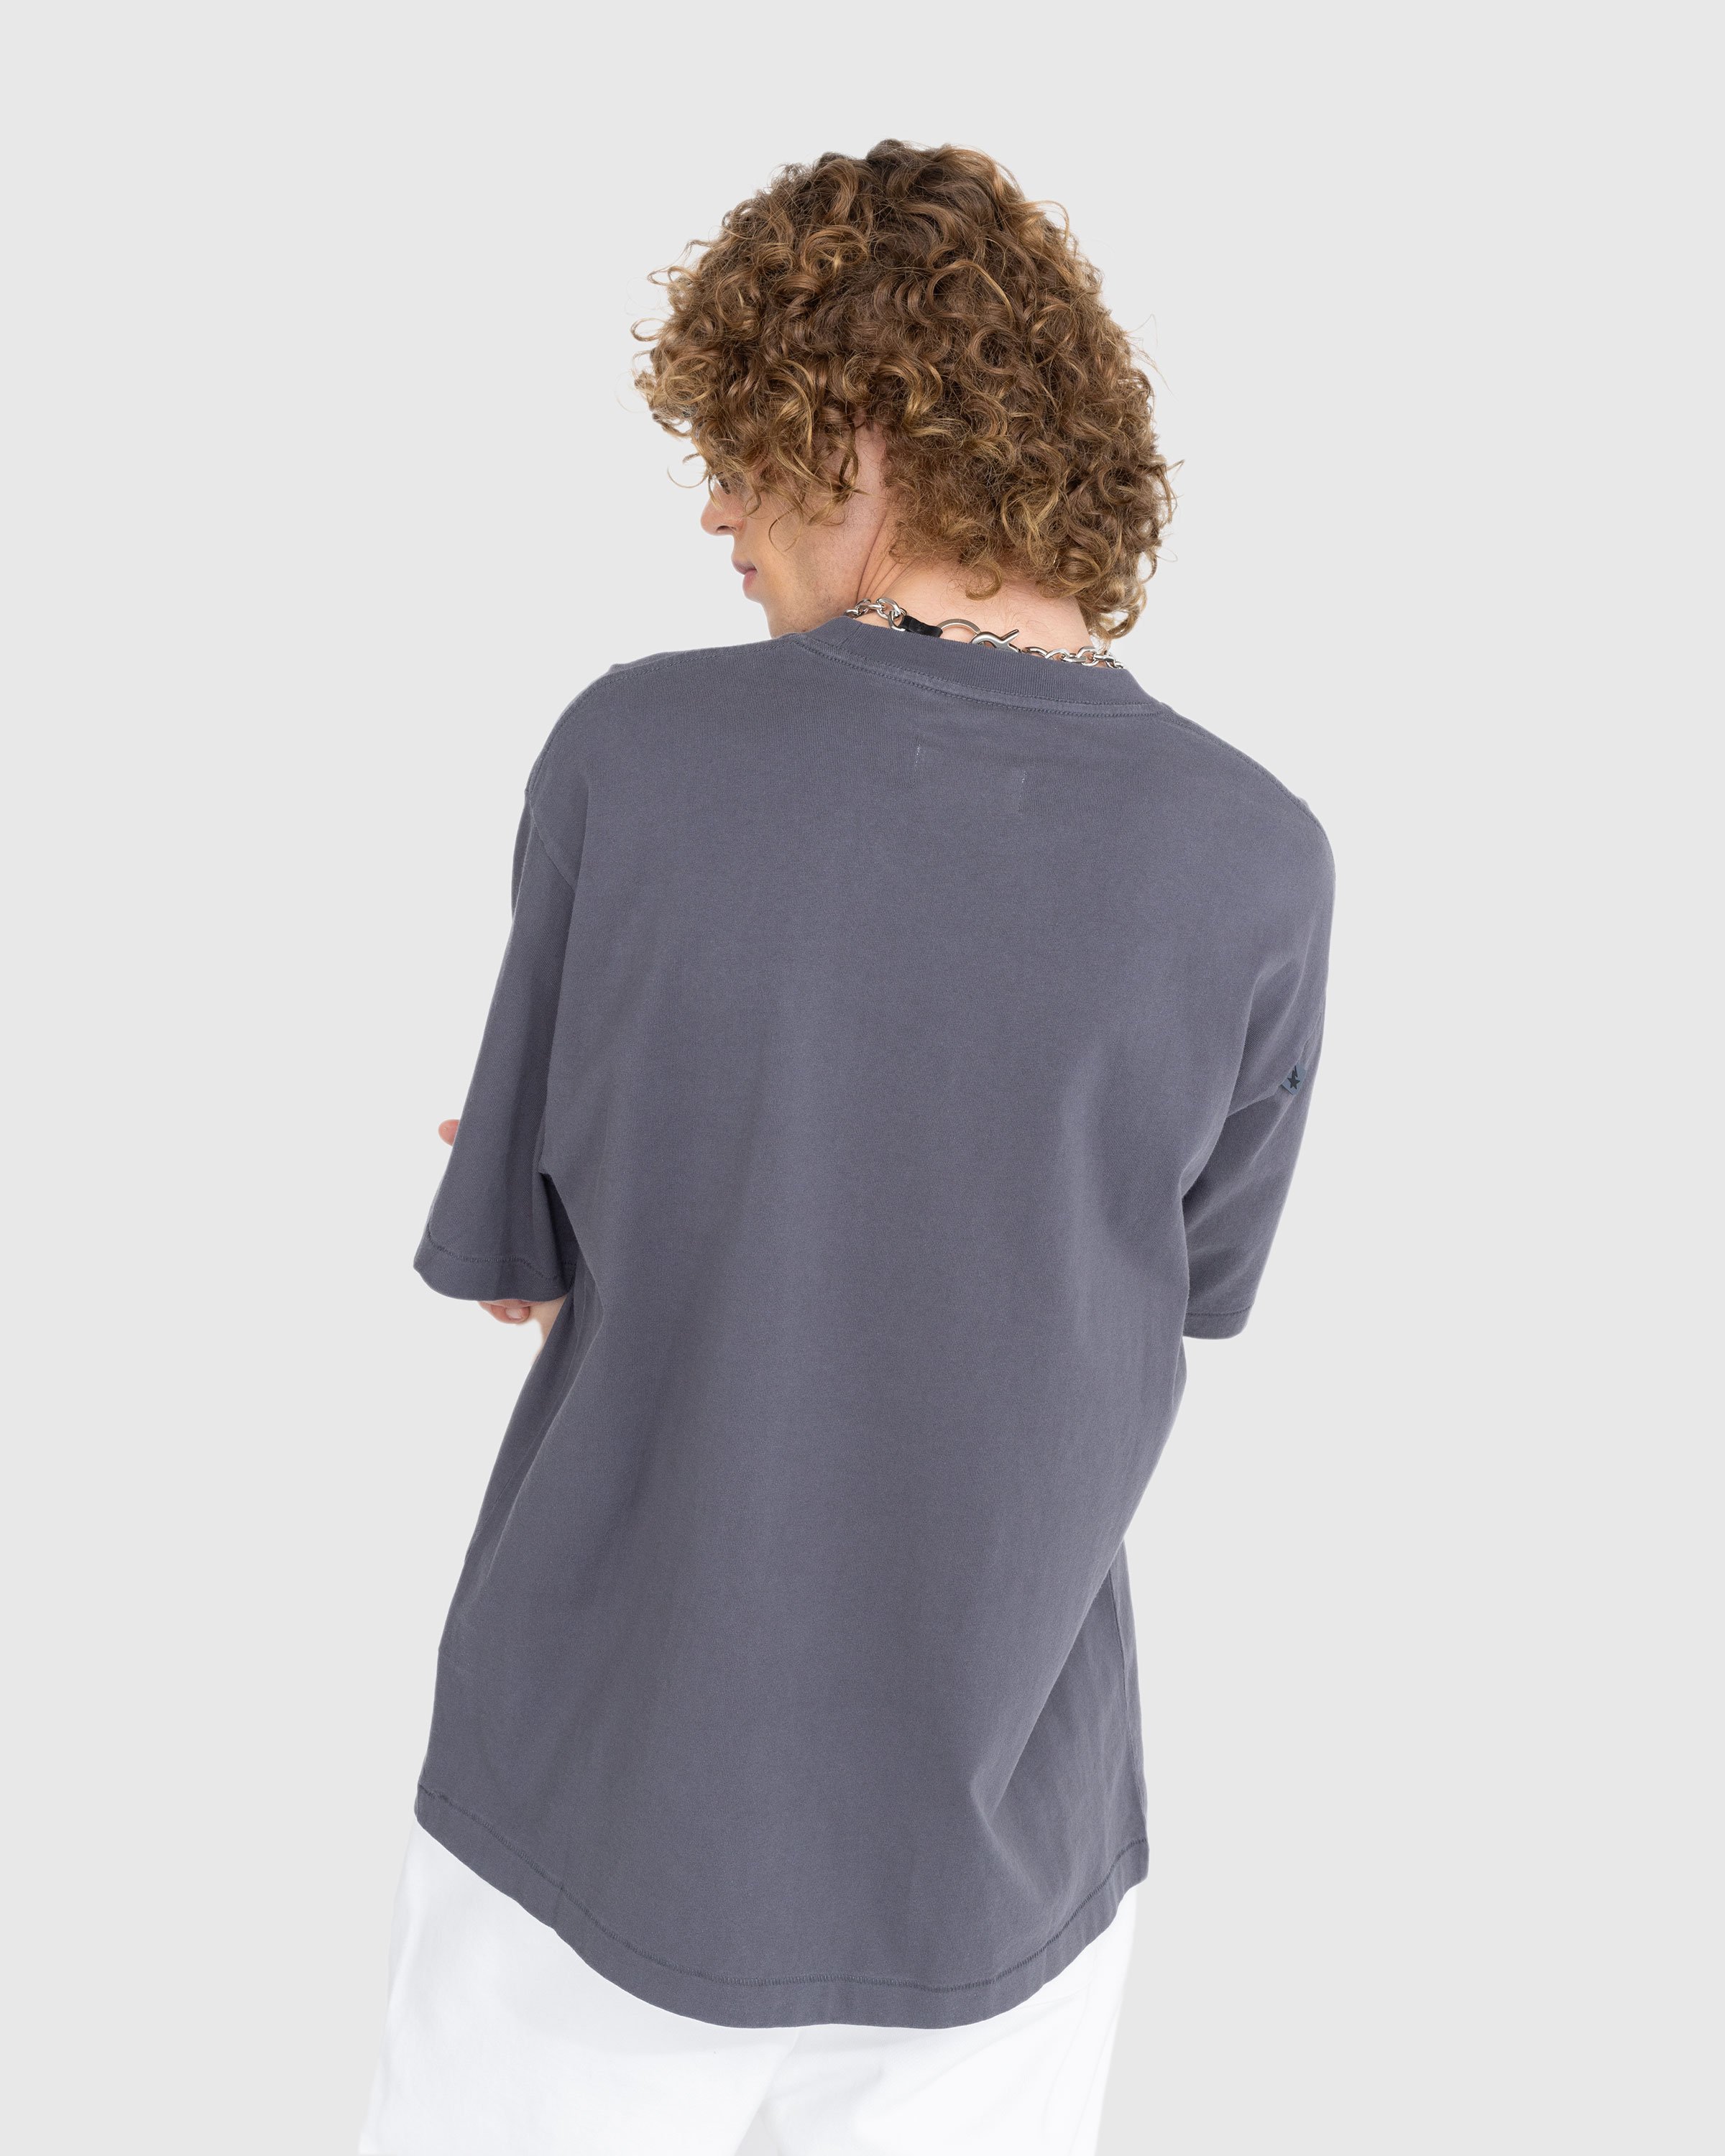 BAPE x Highsnobiety - Heavy Washed T-Shirt Charcoal - Clothing - Grey - Image 3